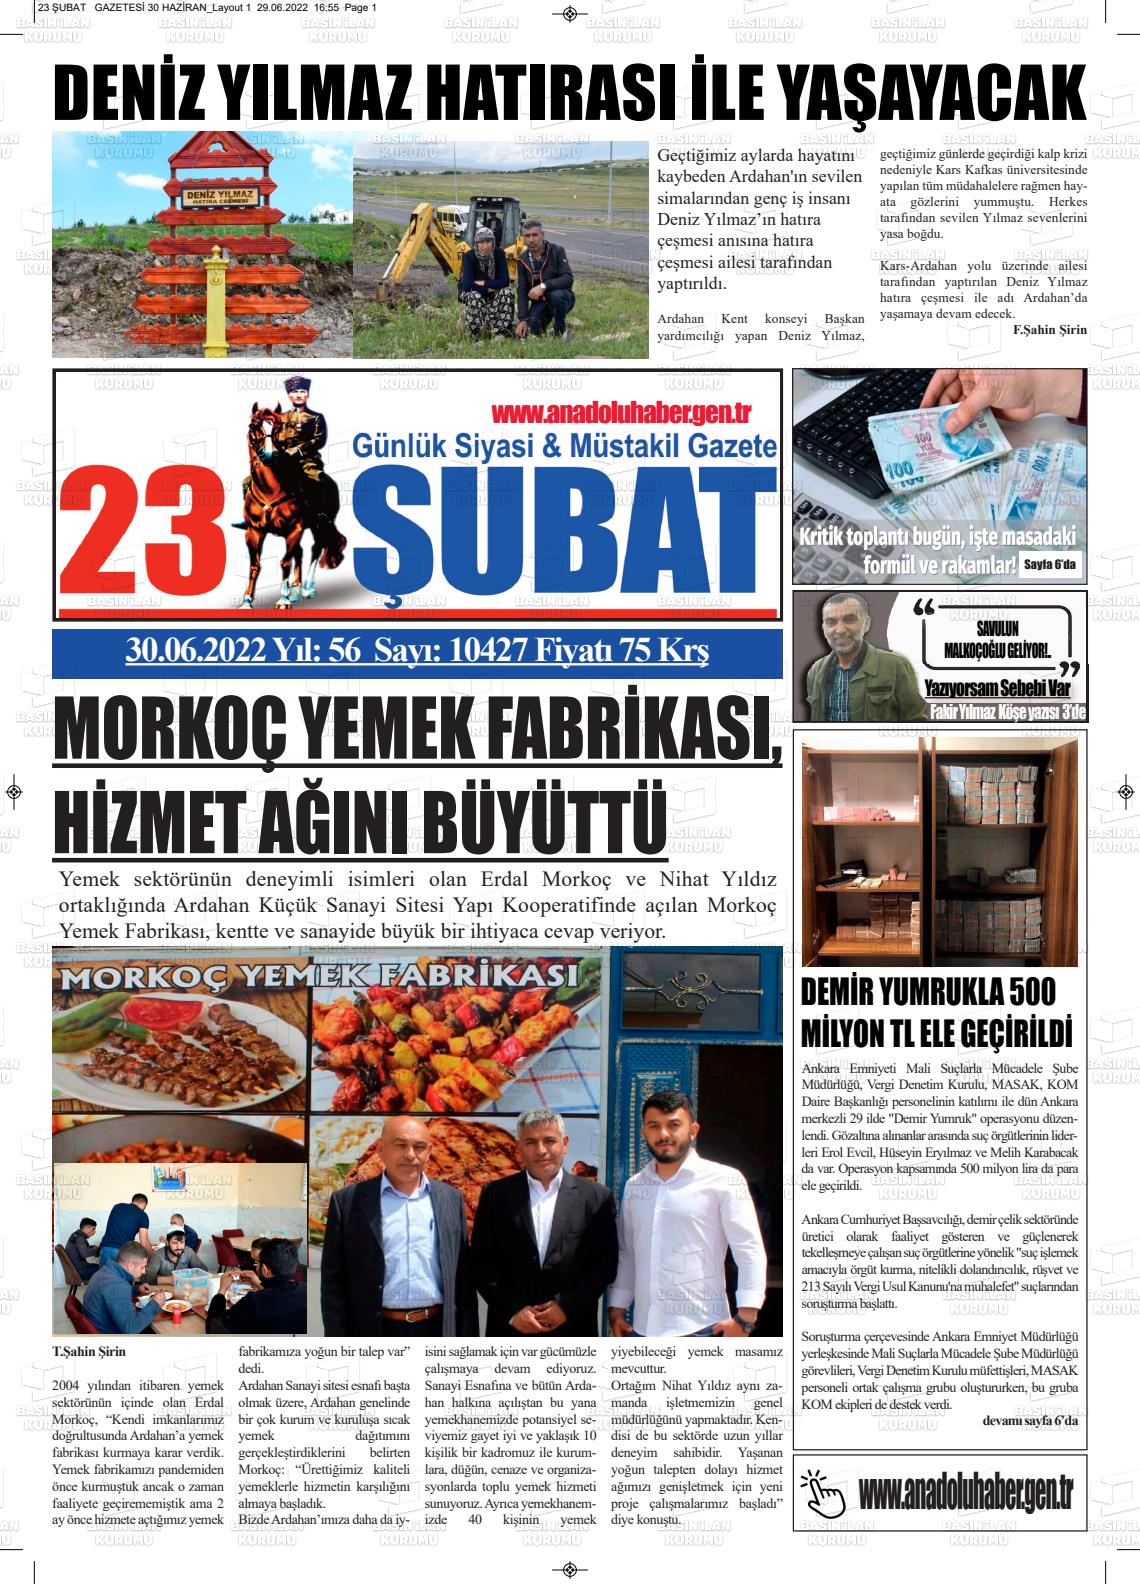 02 Temmuz 2022 23 Şubat Gazete Manşeti